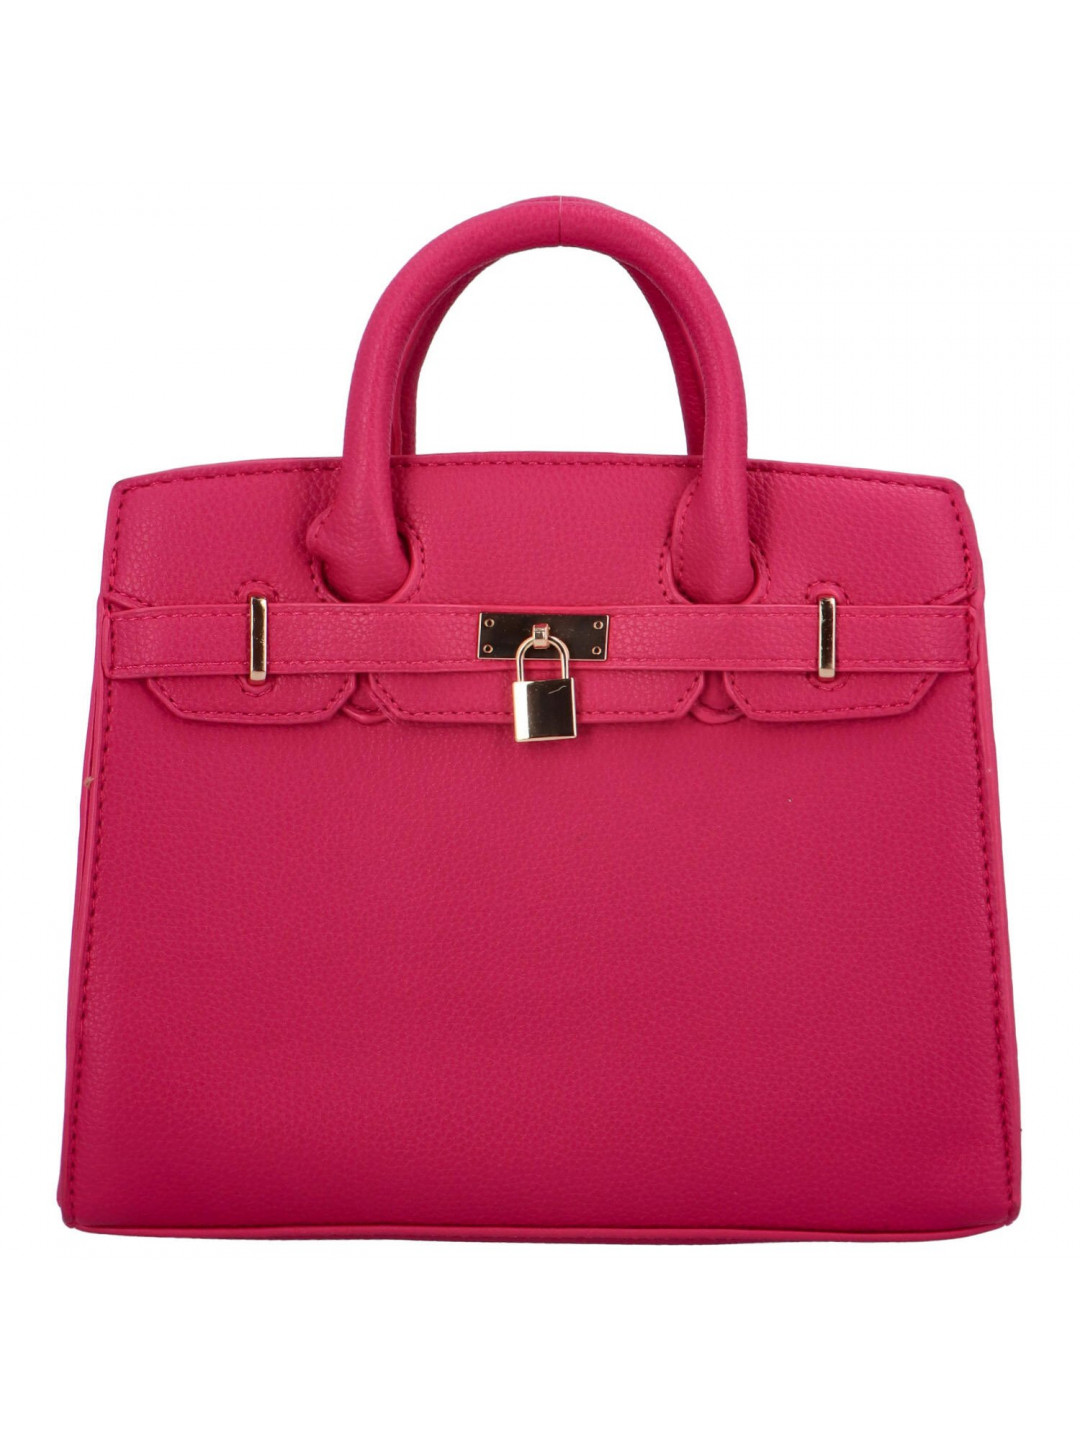 Trendová dámská kabelka do ruky Sorini výrazná růžová